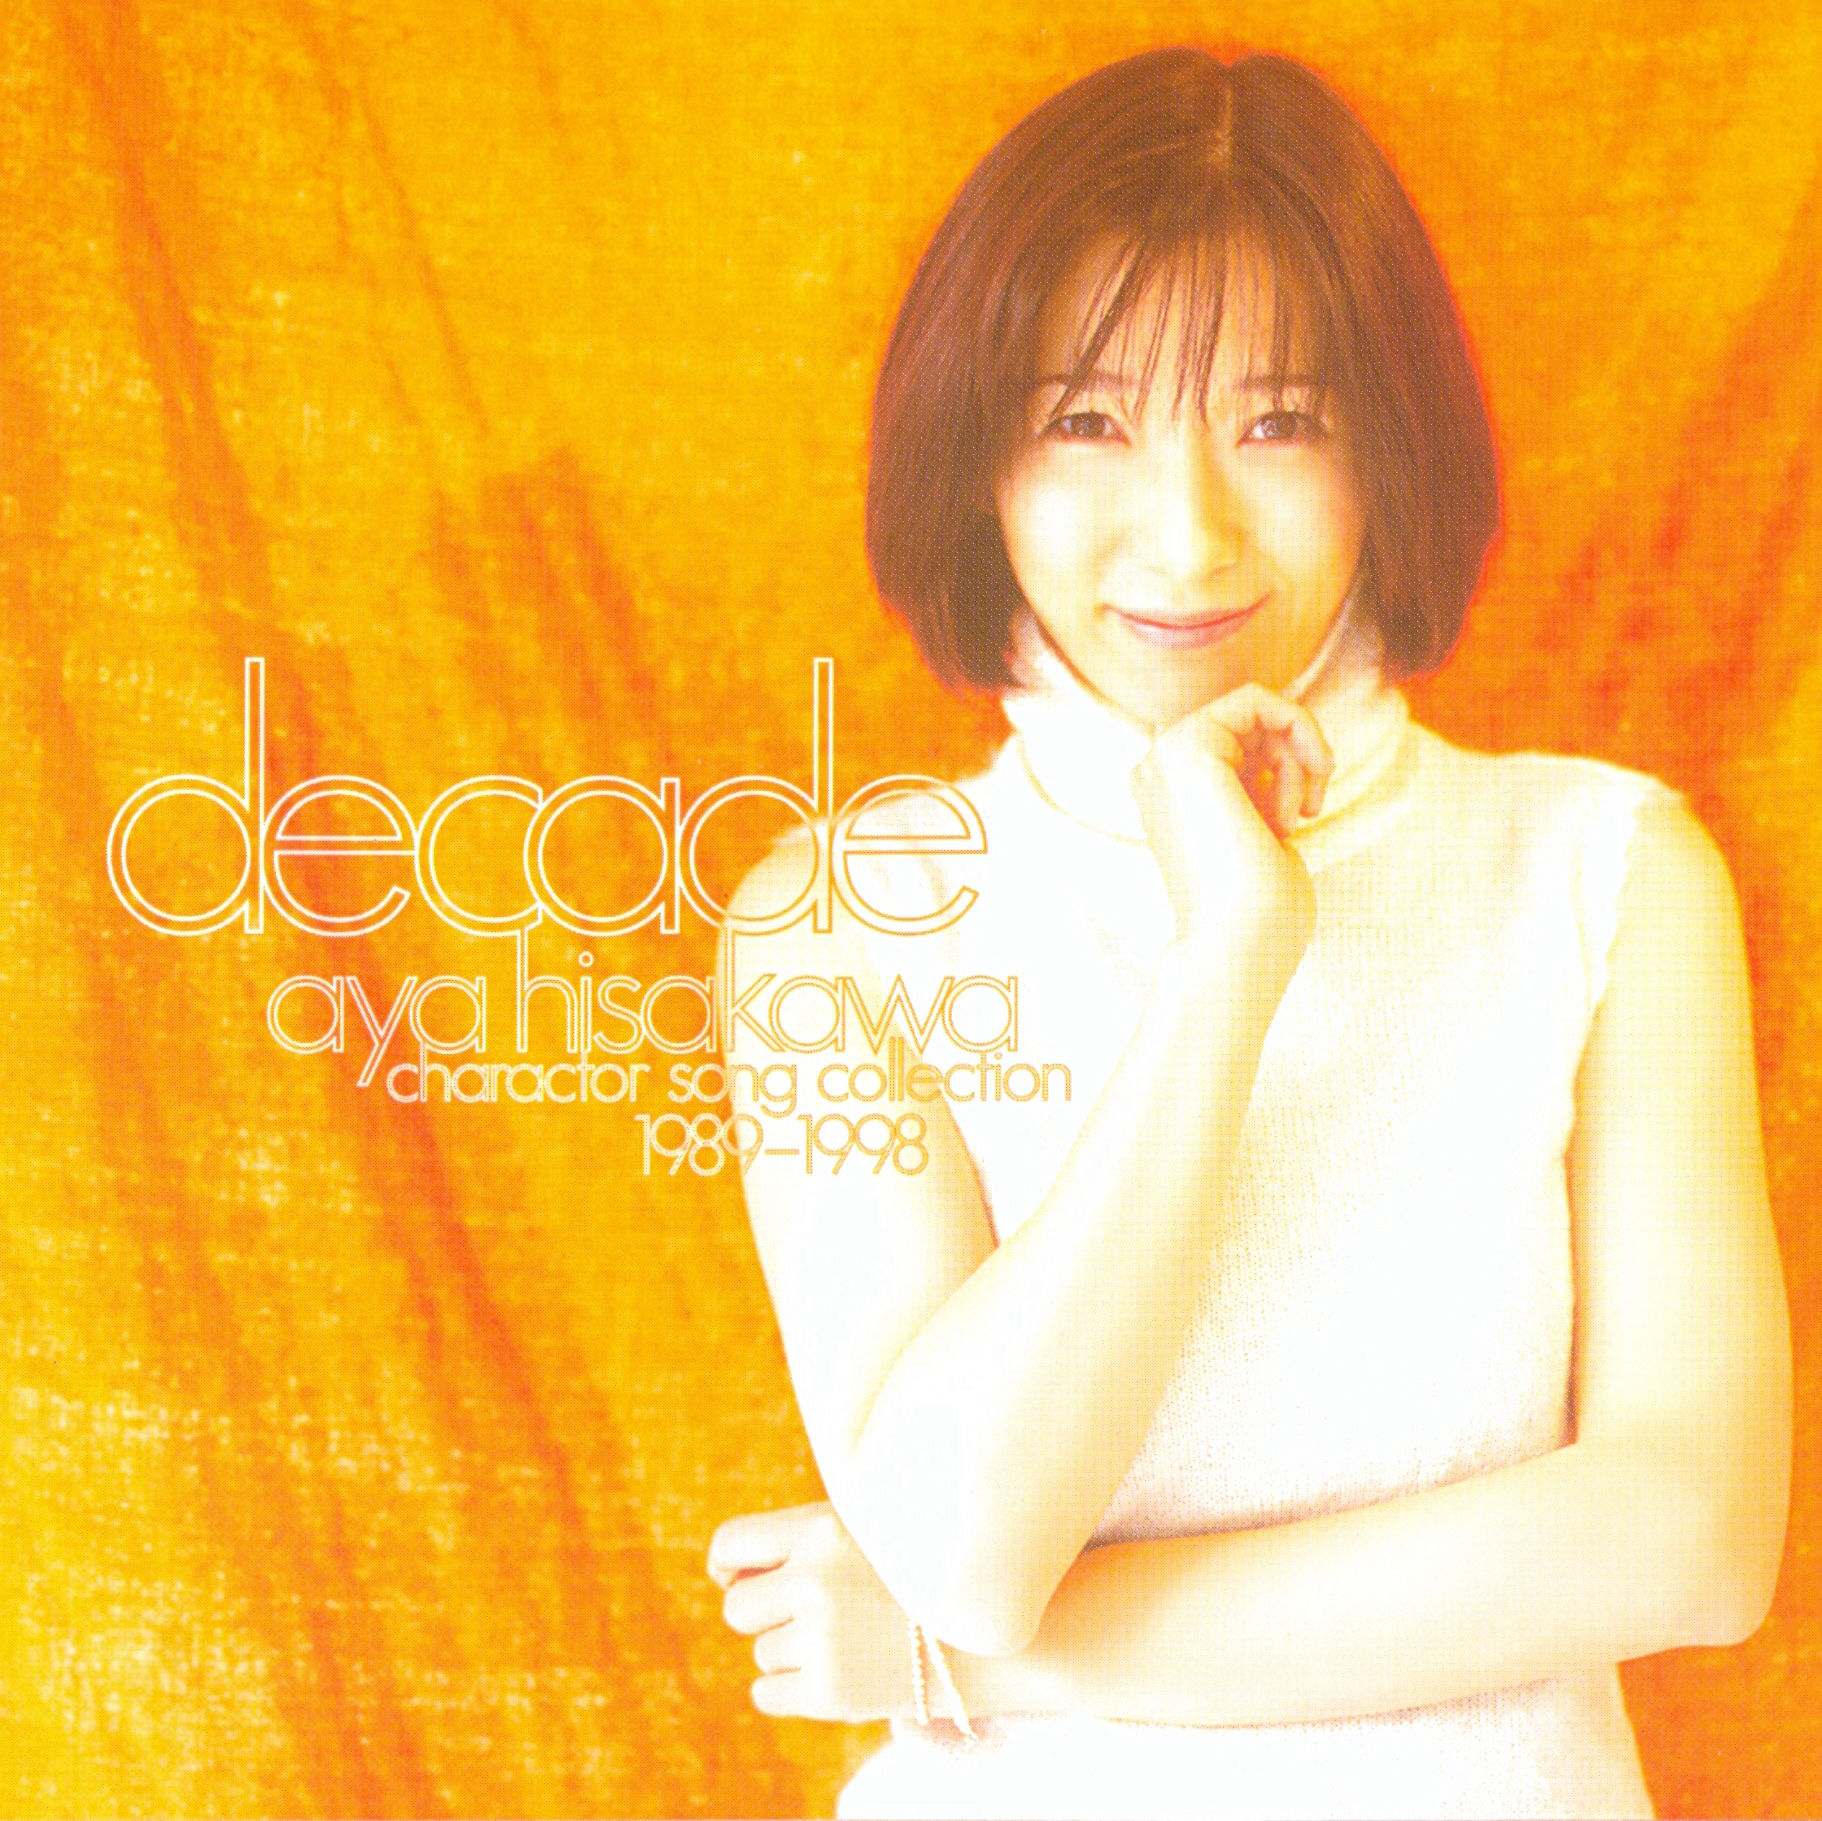 久川綾 - Decade ~Character Song Collection~ (1989-1998).jpg